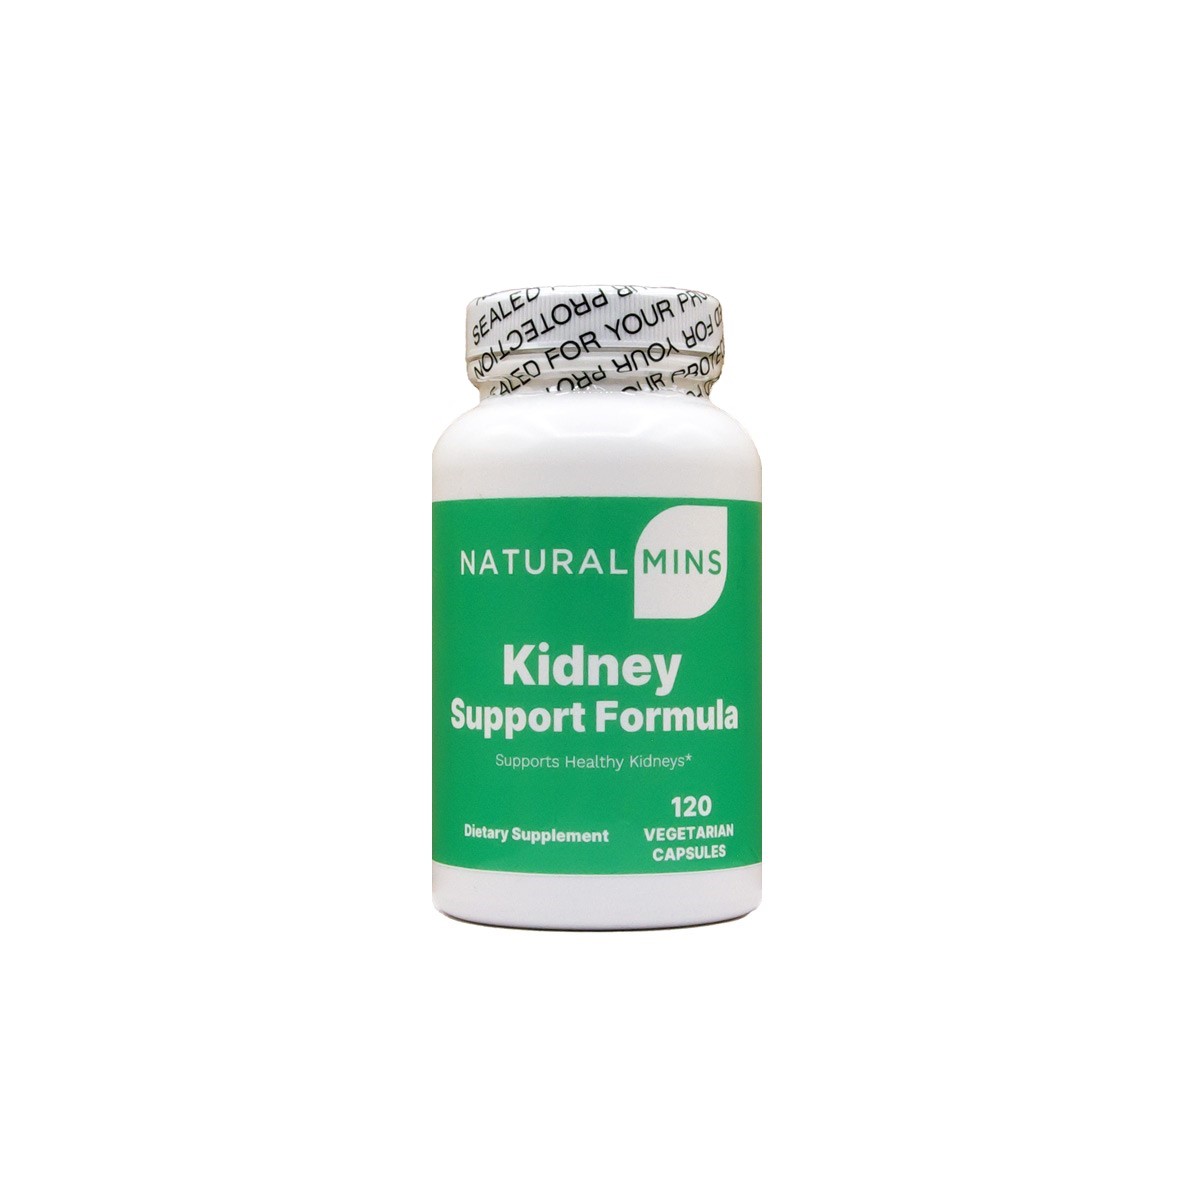 Kidney Support Formula